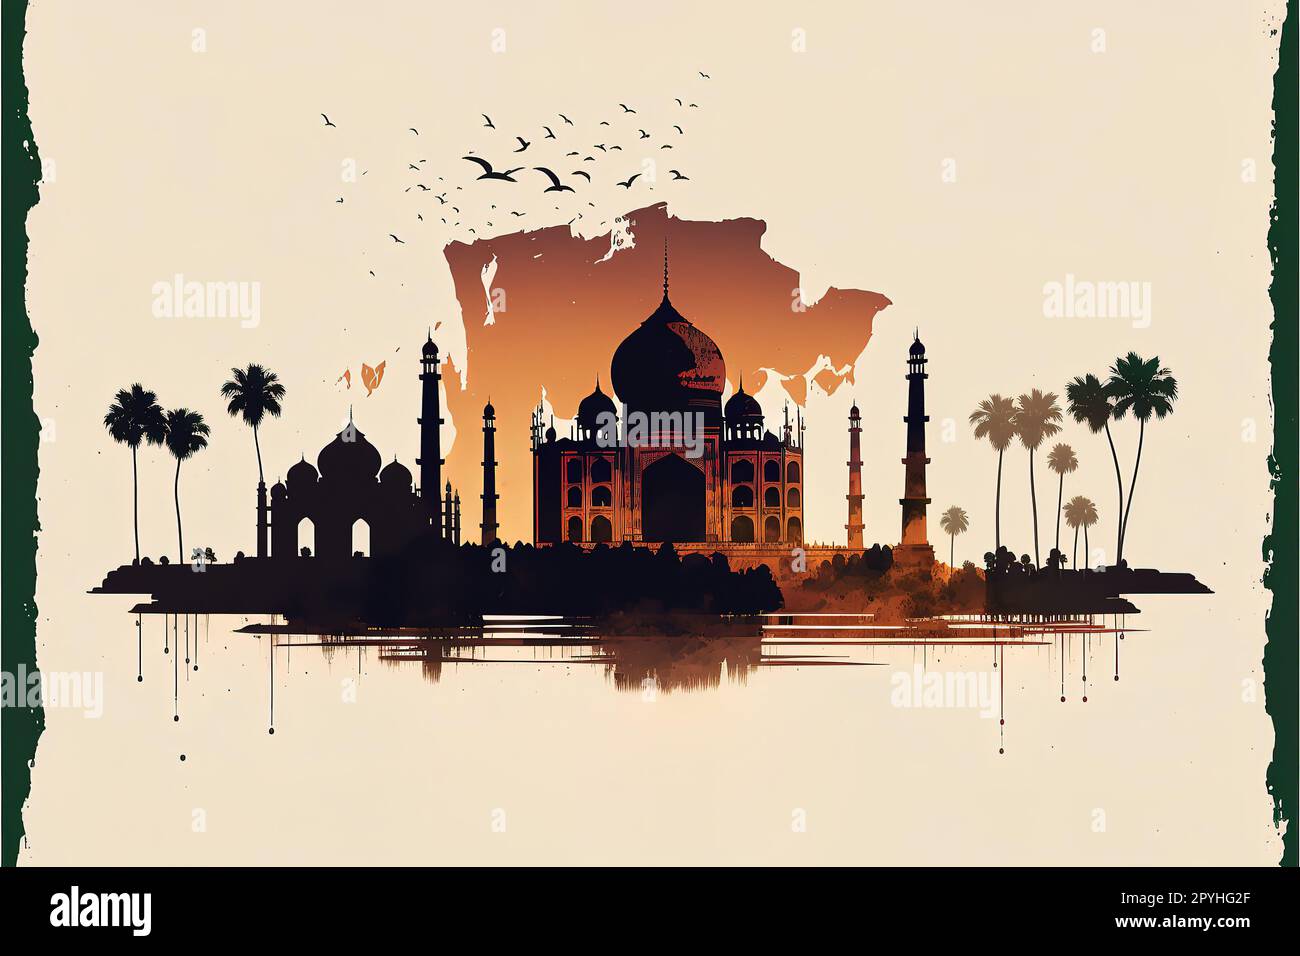 India skyline. Vector illustration Stock Photo